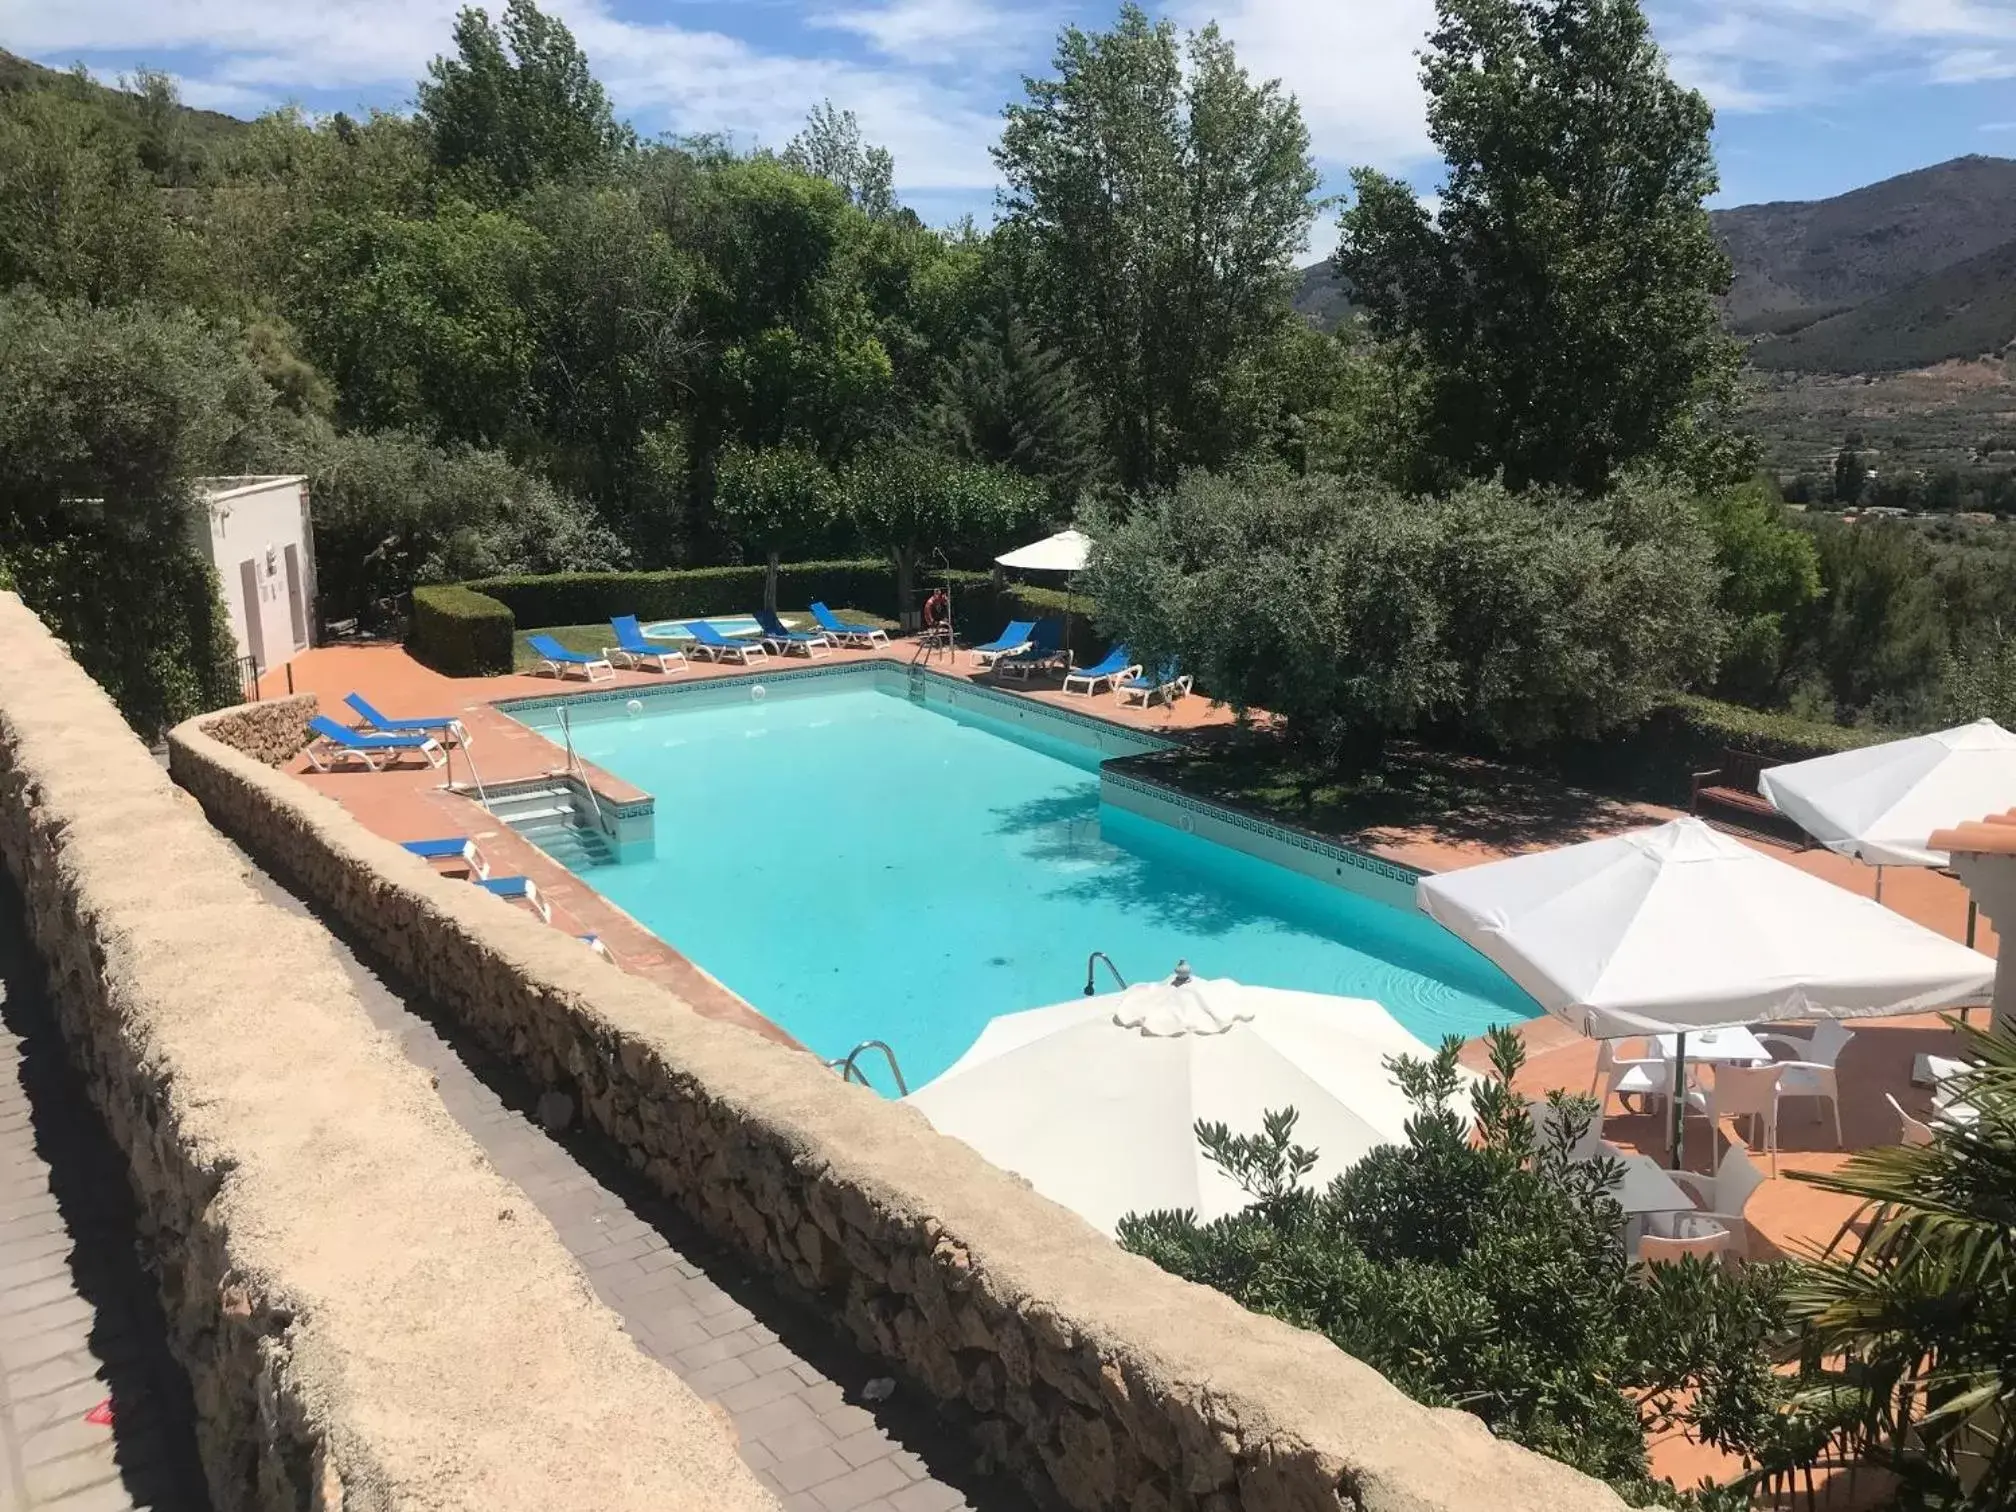 Swimming Pool in Villa Turística de Laujar de Andarax